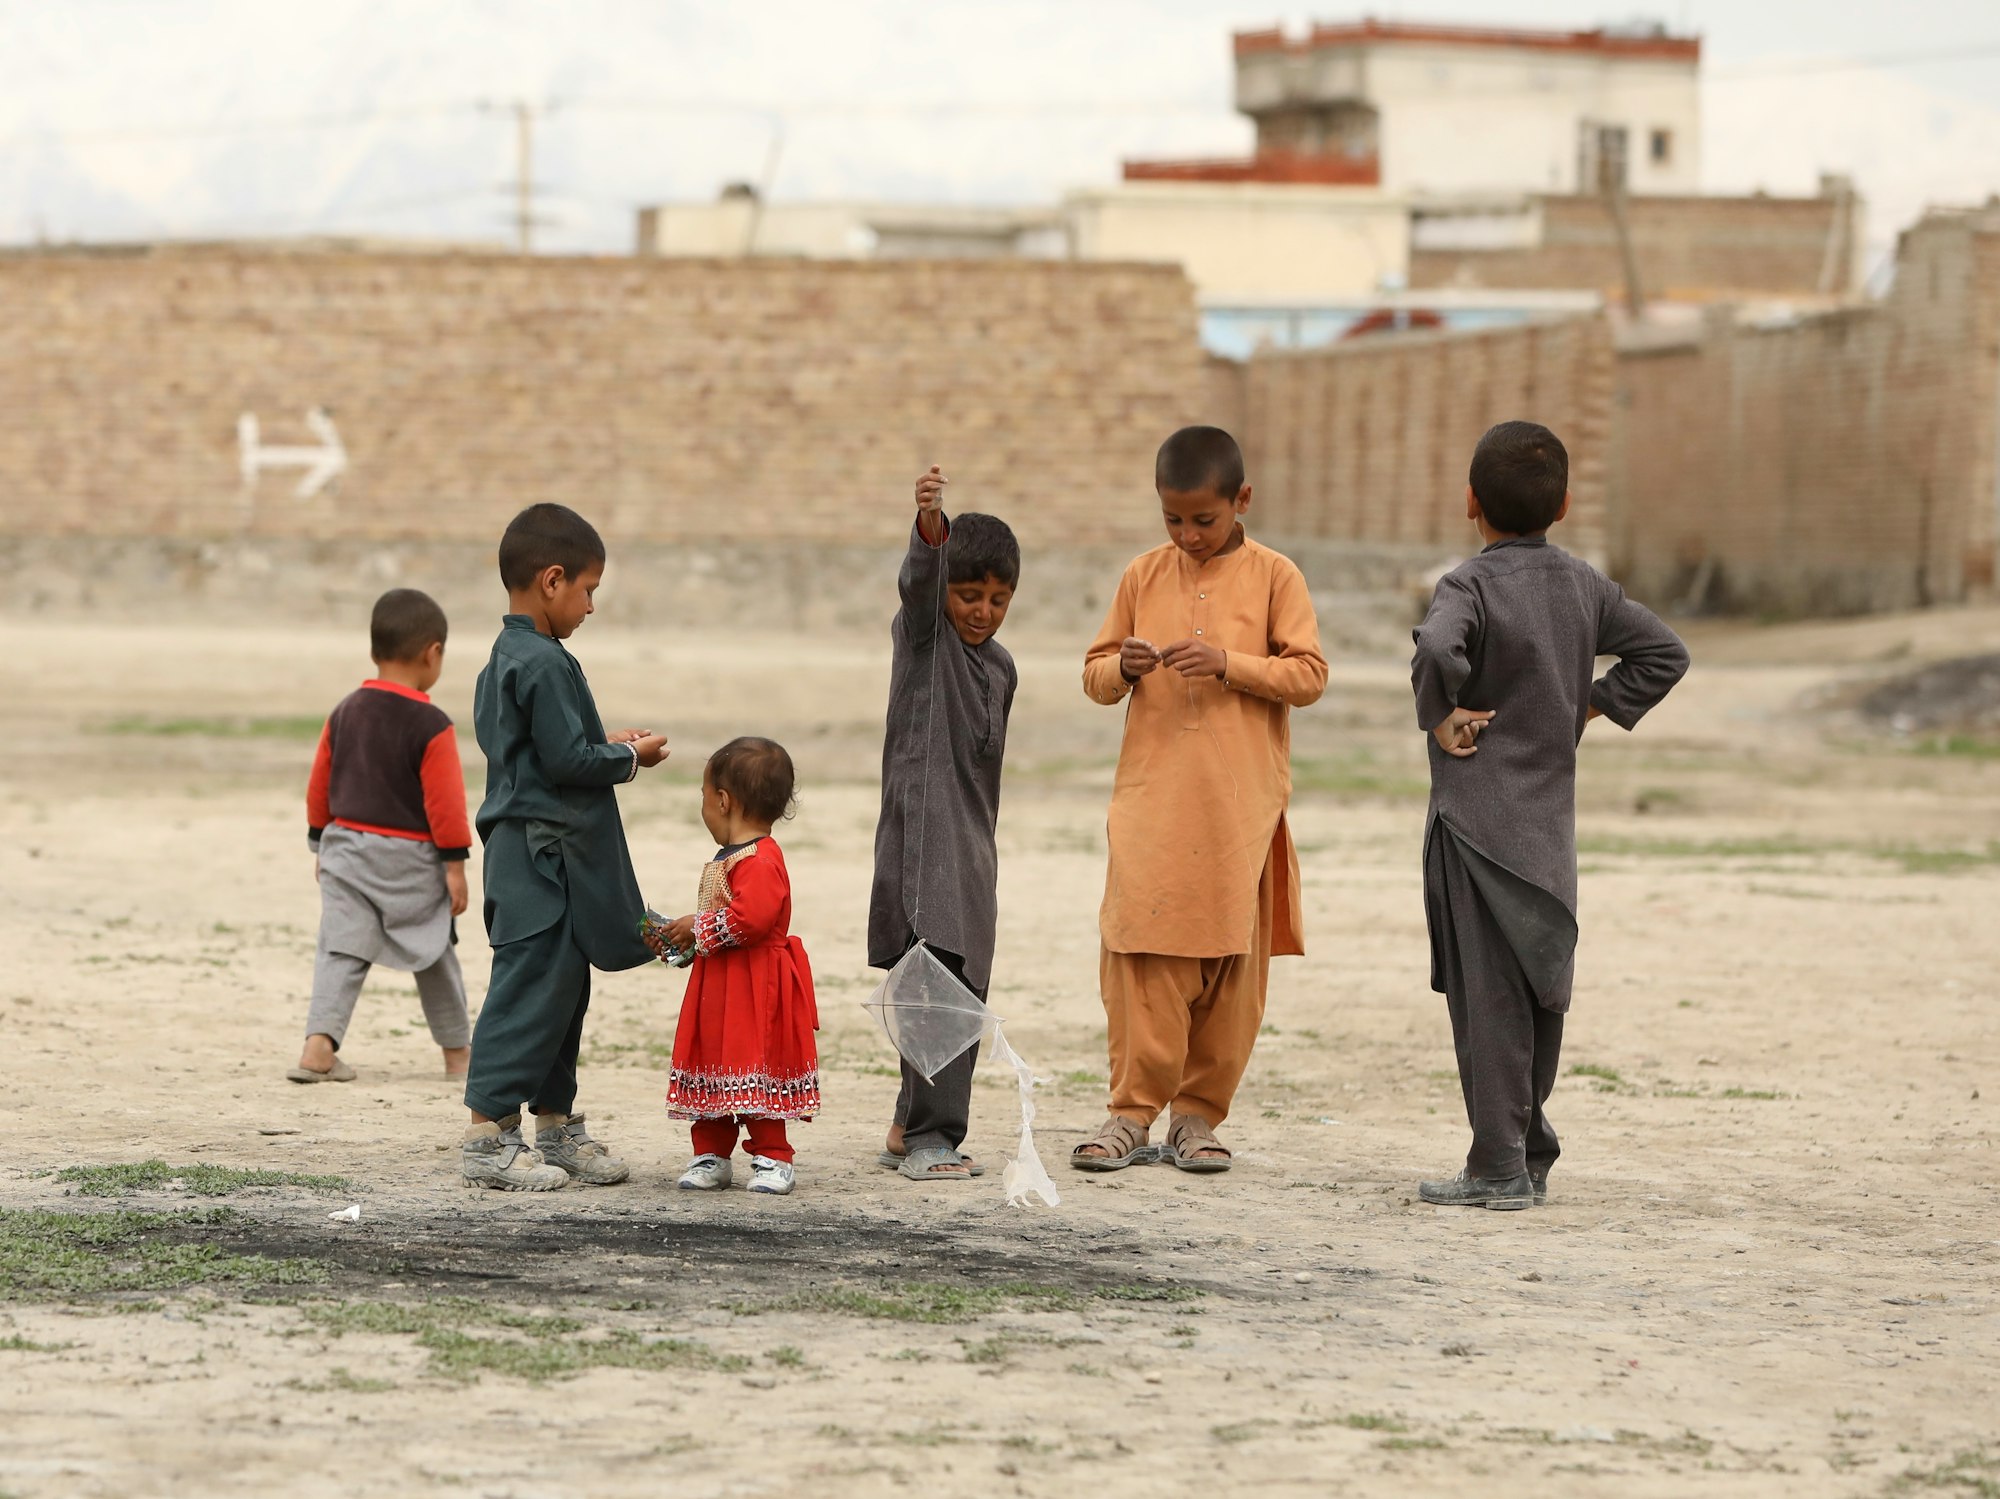 भारत ने अफगानी बच्चों के लिए भेजीं दवाइयां, तालिबान ने कहा शुक्रिया